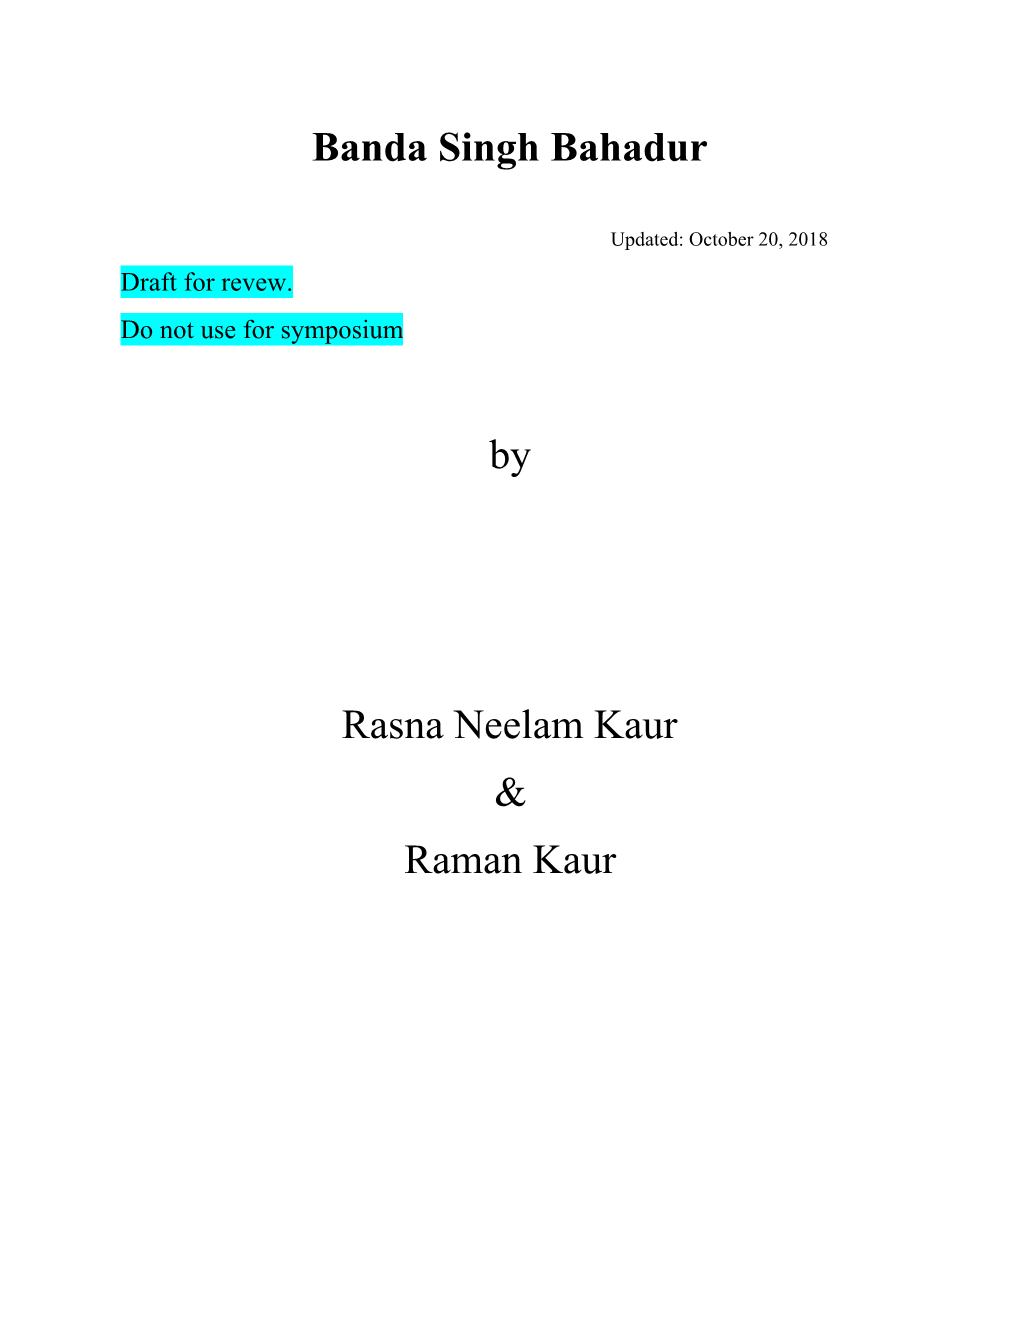 Banda​ ​Singh​ ​Bahadur by Rasna​​Neelam​​Kaur & Raman